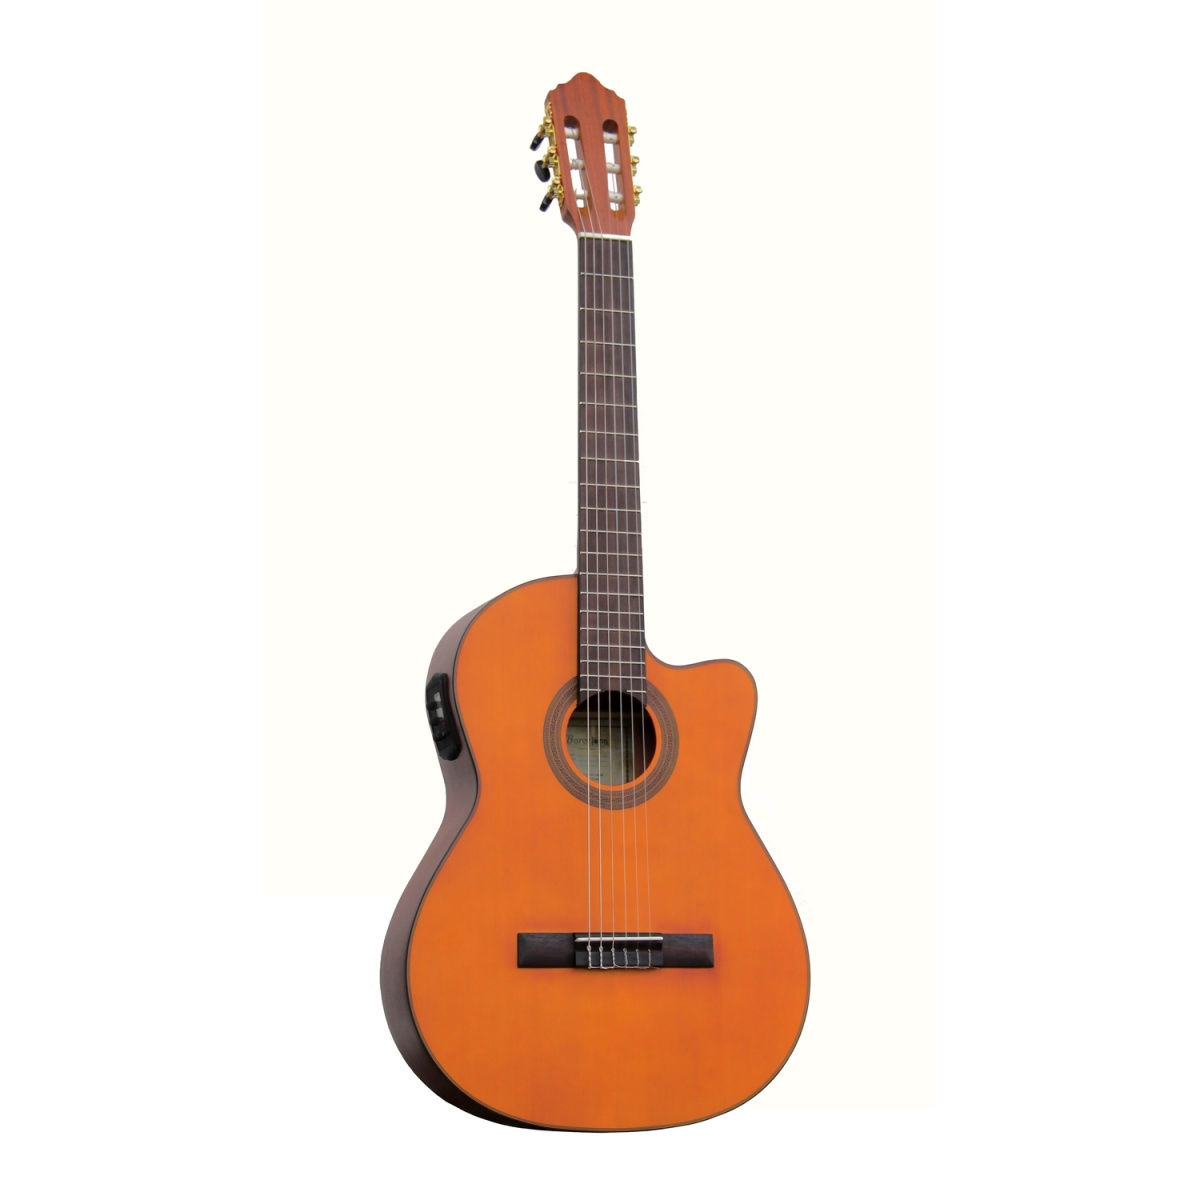 BARCELONA CG40CE - Классическая гитара с пъезодатчиком купить в prostore.me